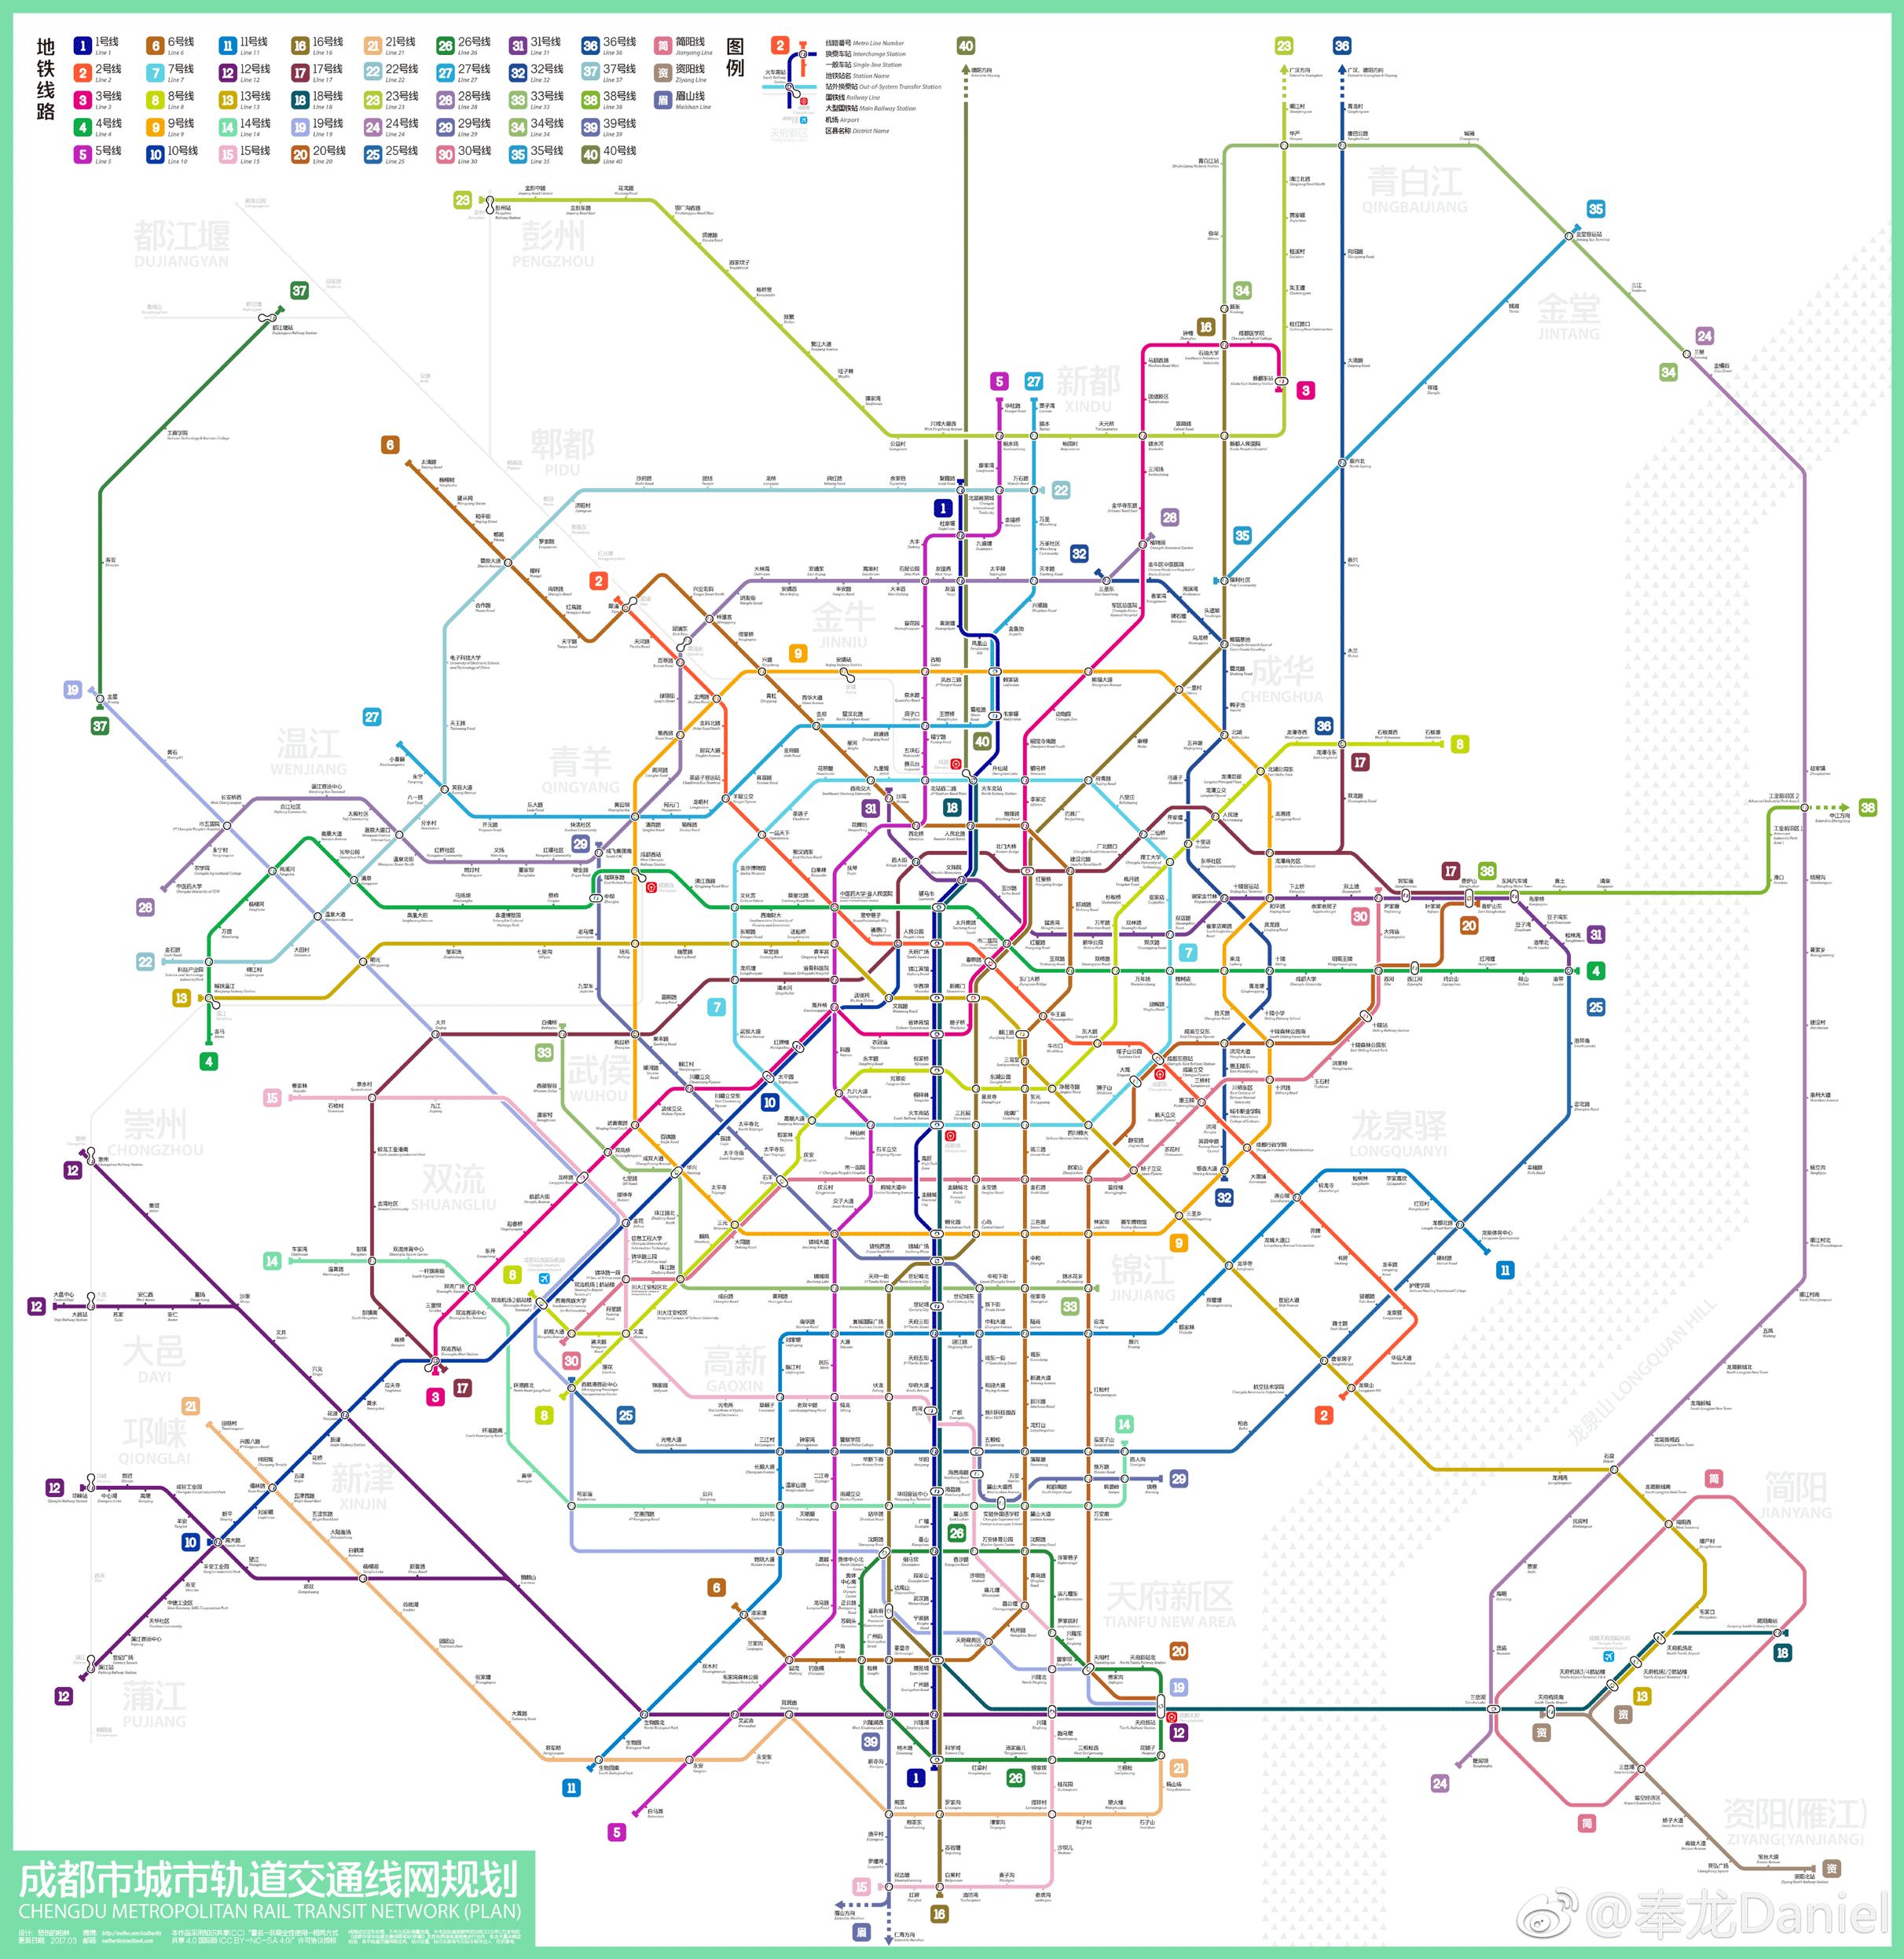 最后给大家奉上很多粉丝留言想要的成都未来40条地铁线路的高清图